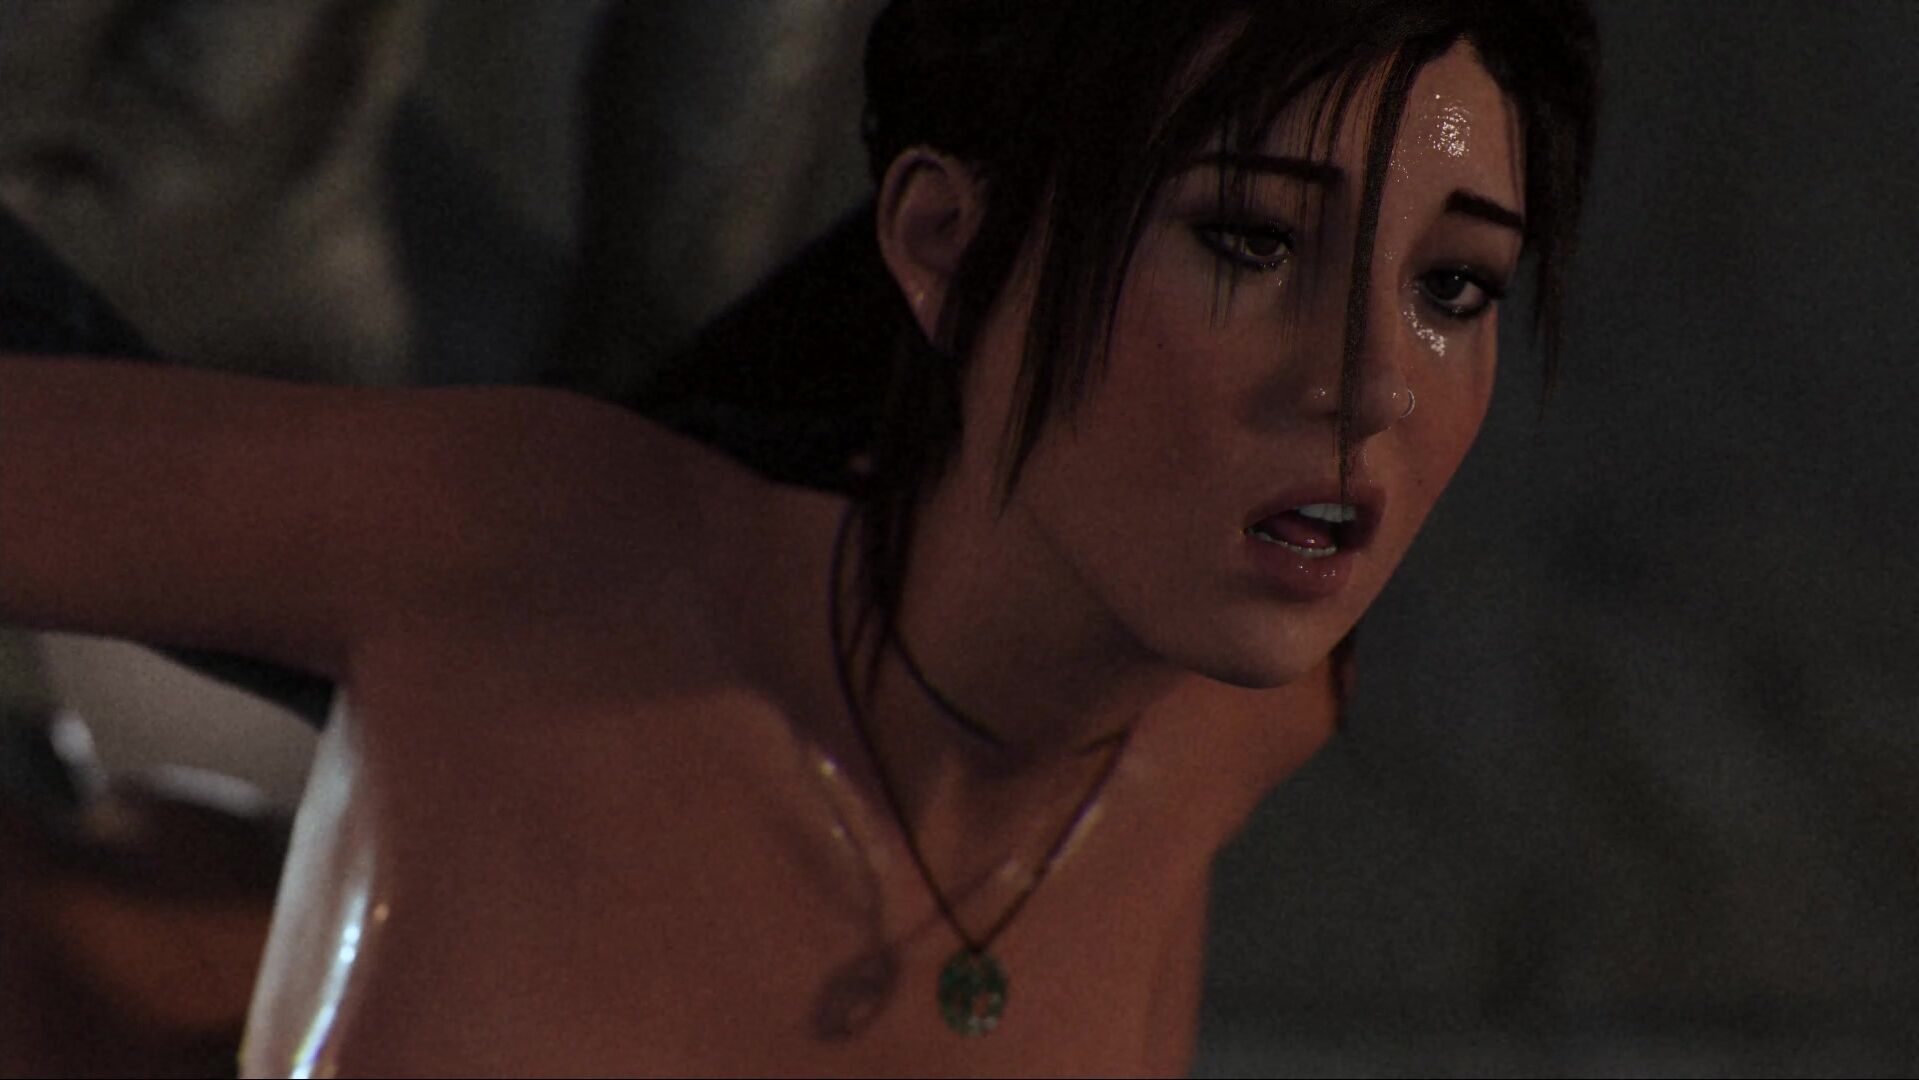 Evil monsters rape tight anal Lara Croft! 3D porn Tomb Raider